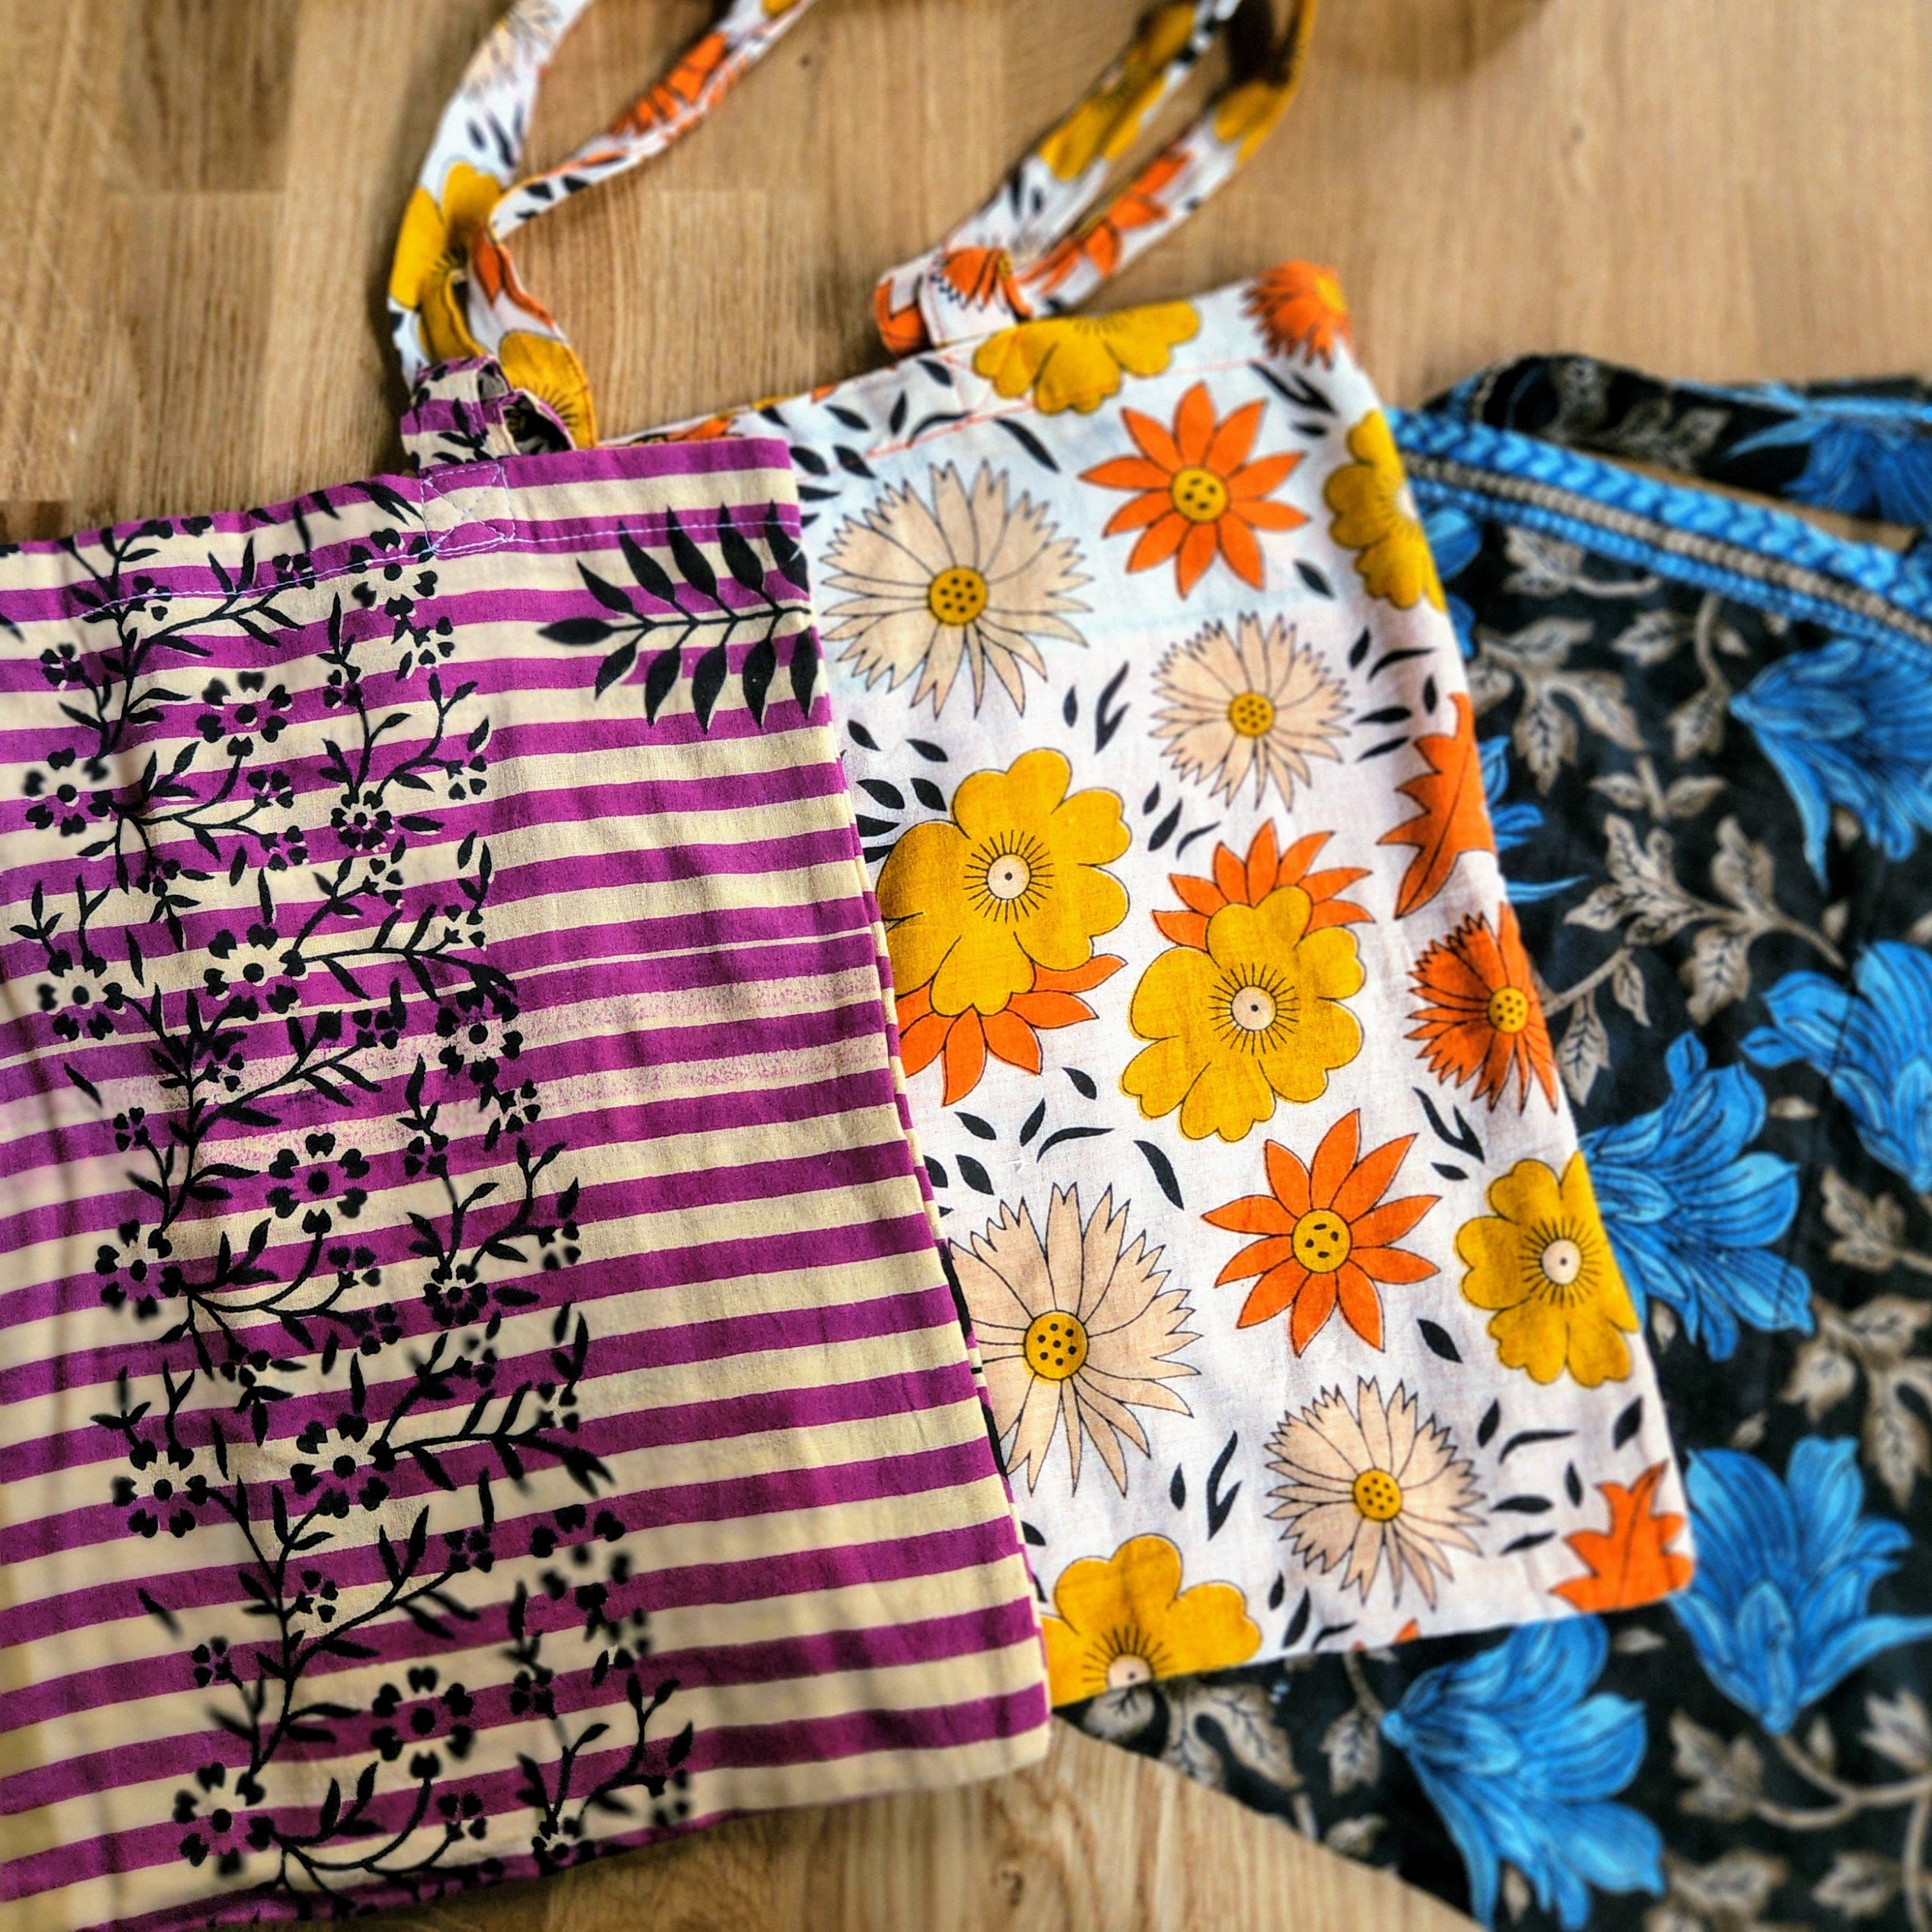 Upcycled Sari Fabric Tote Bag By Pri Pri | notonthehighstreet.com